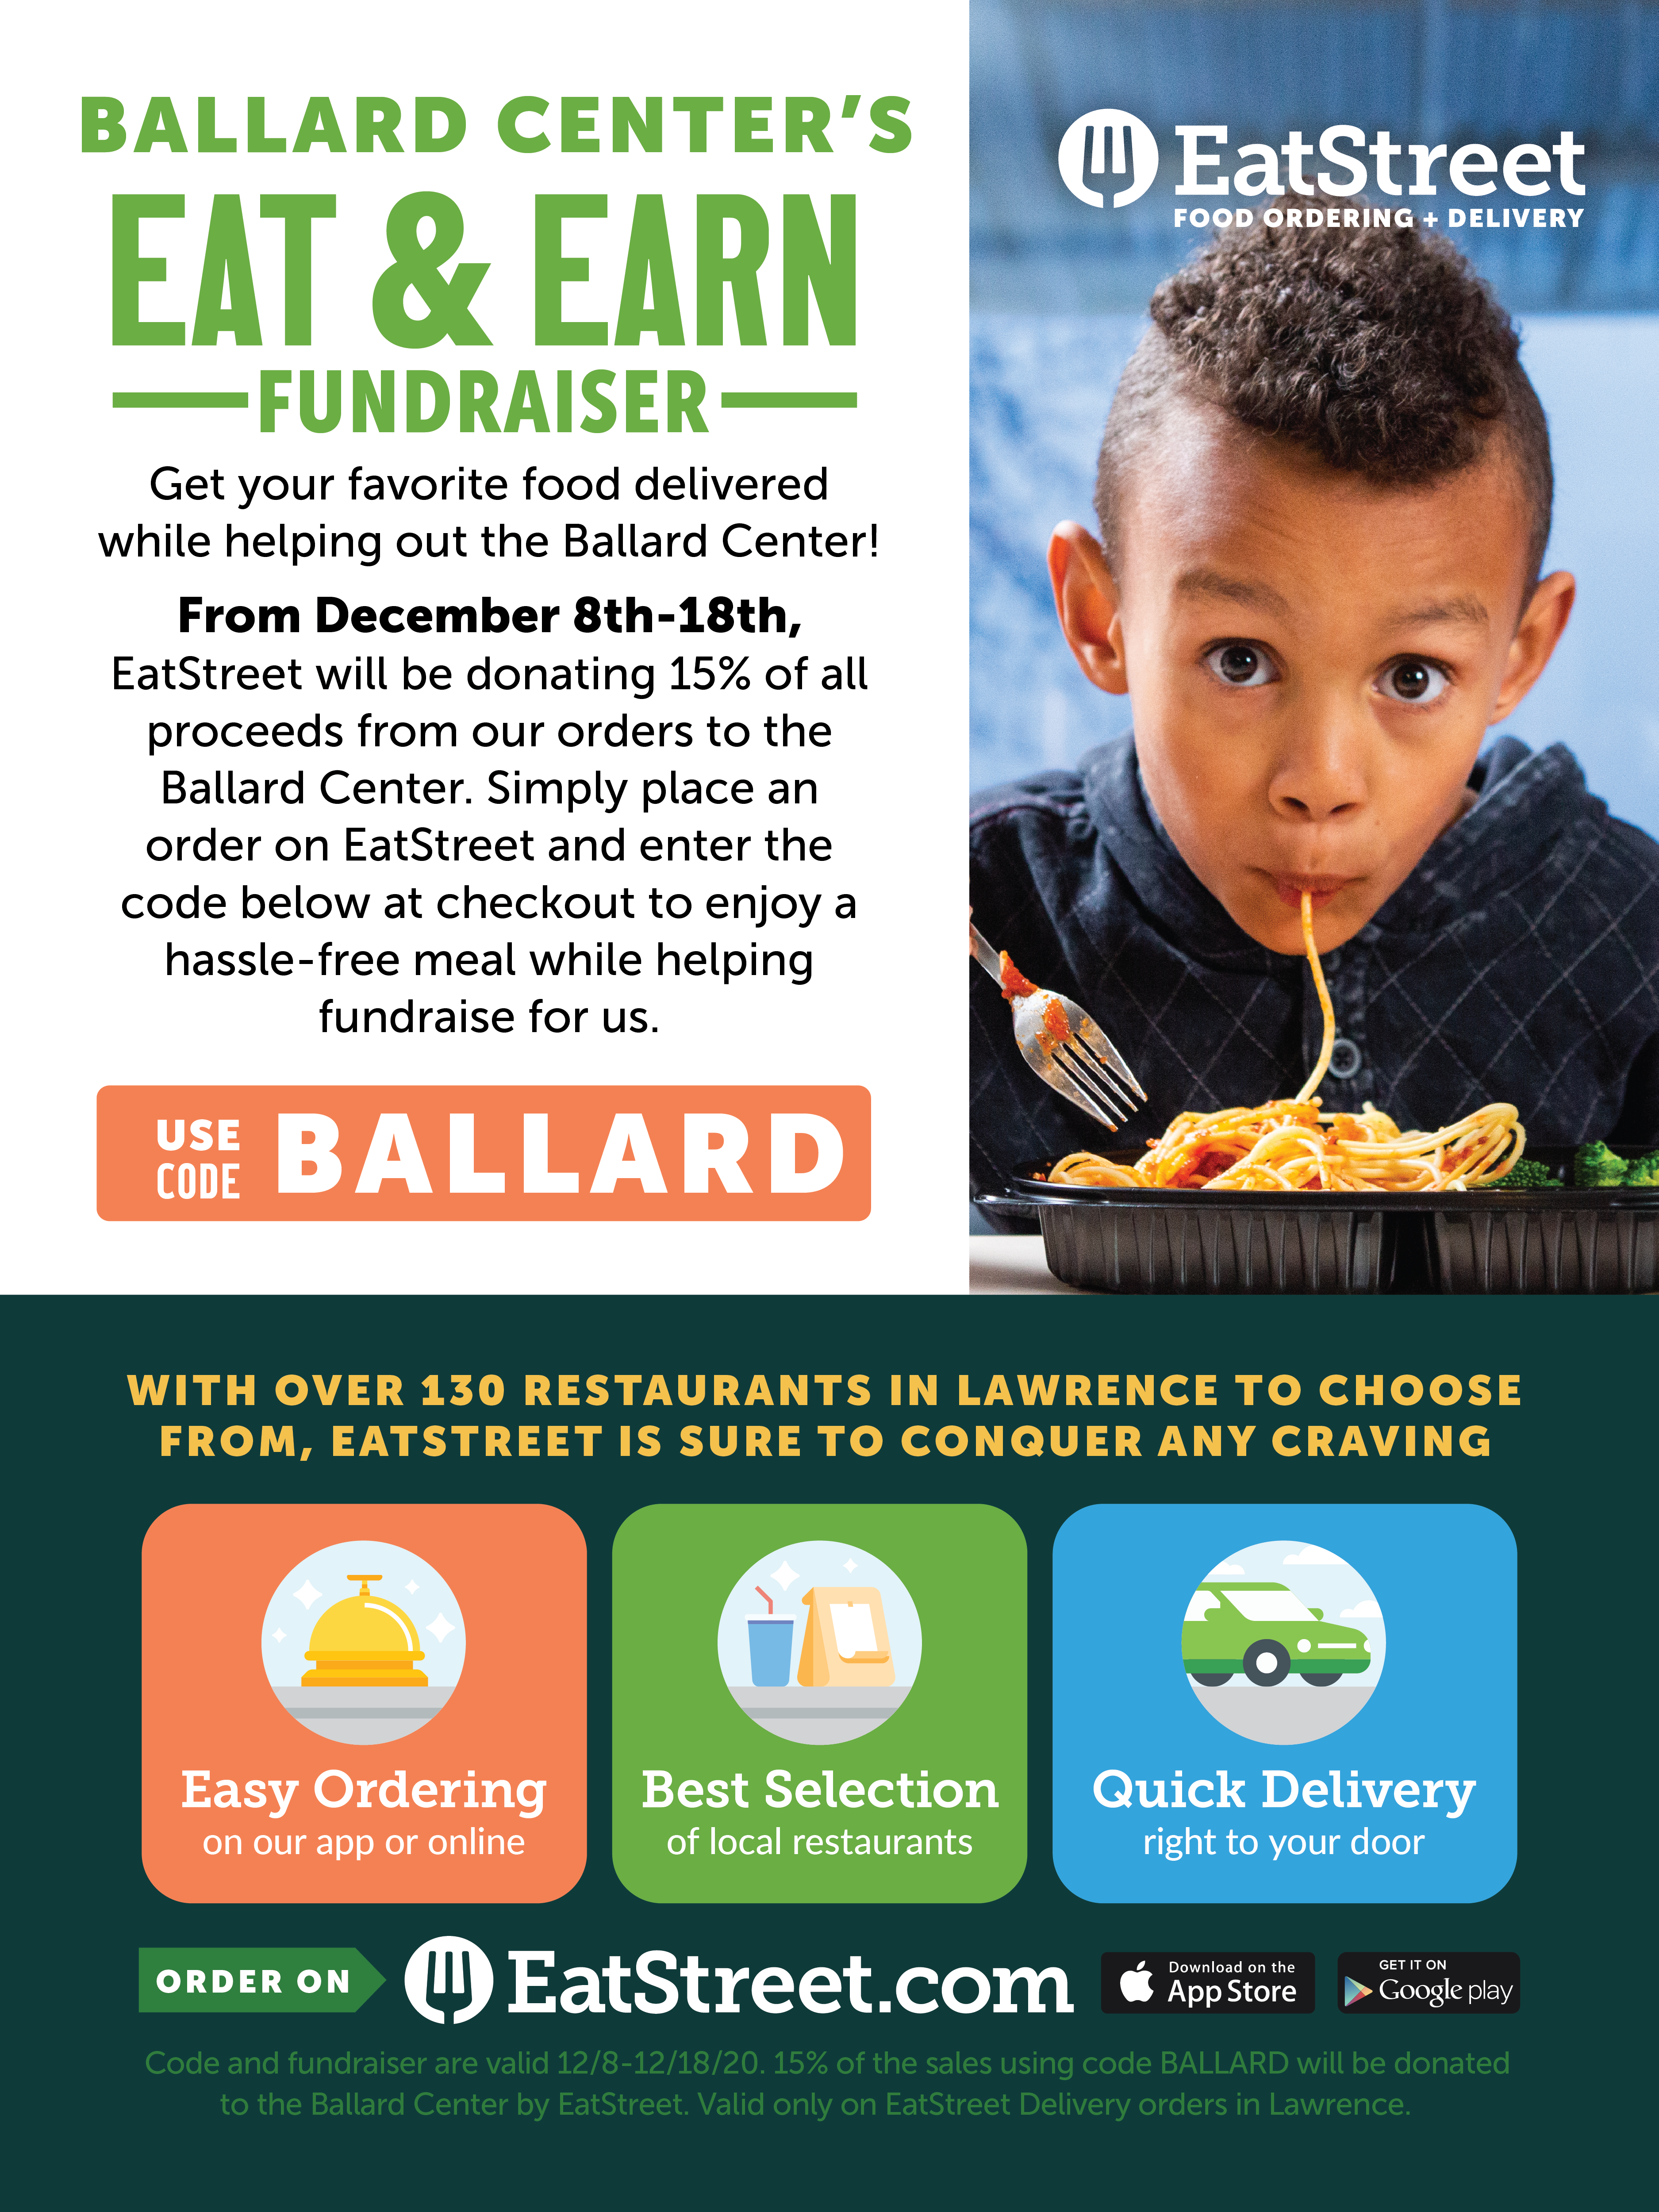 Ballard Center's eat and earn fundraiser flyer